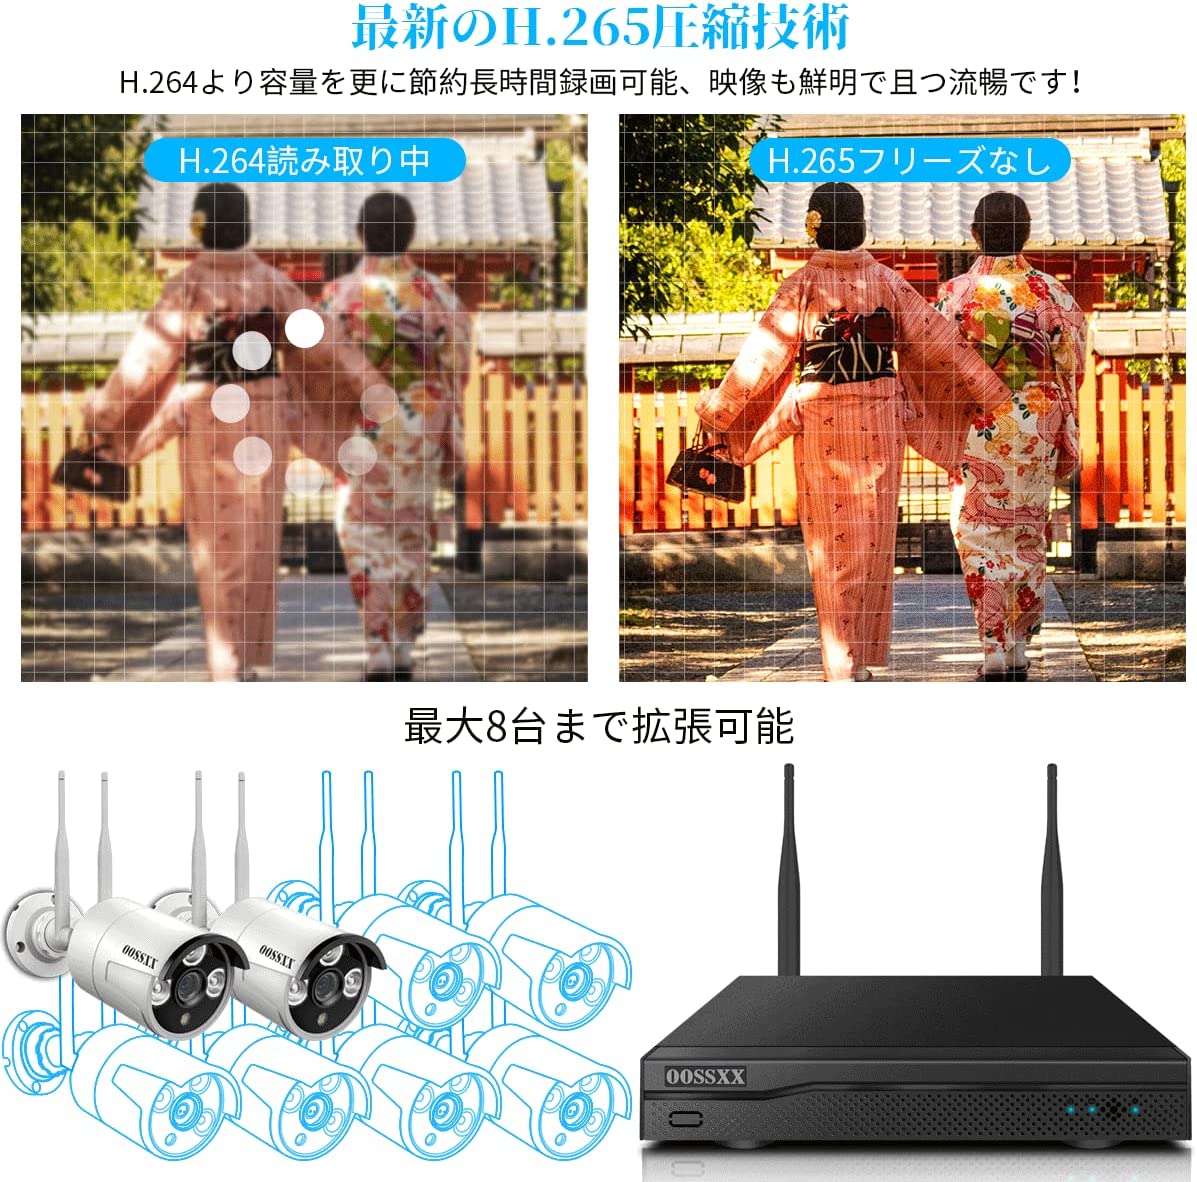 OOSSXX ワイヤレス防犯カメラ NVRレコーダー 録画機 500万画素録画機 10台まで接続可能 遠隔監視 日本語システム 防犯監視  ネットワークレコーダー セキュリティー HDD付属しない(アダプター付属) (ブラック（8CH）) (ワイヤレスNVR)（部品）